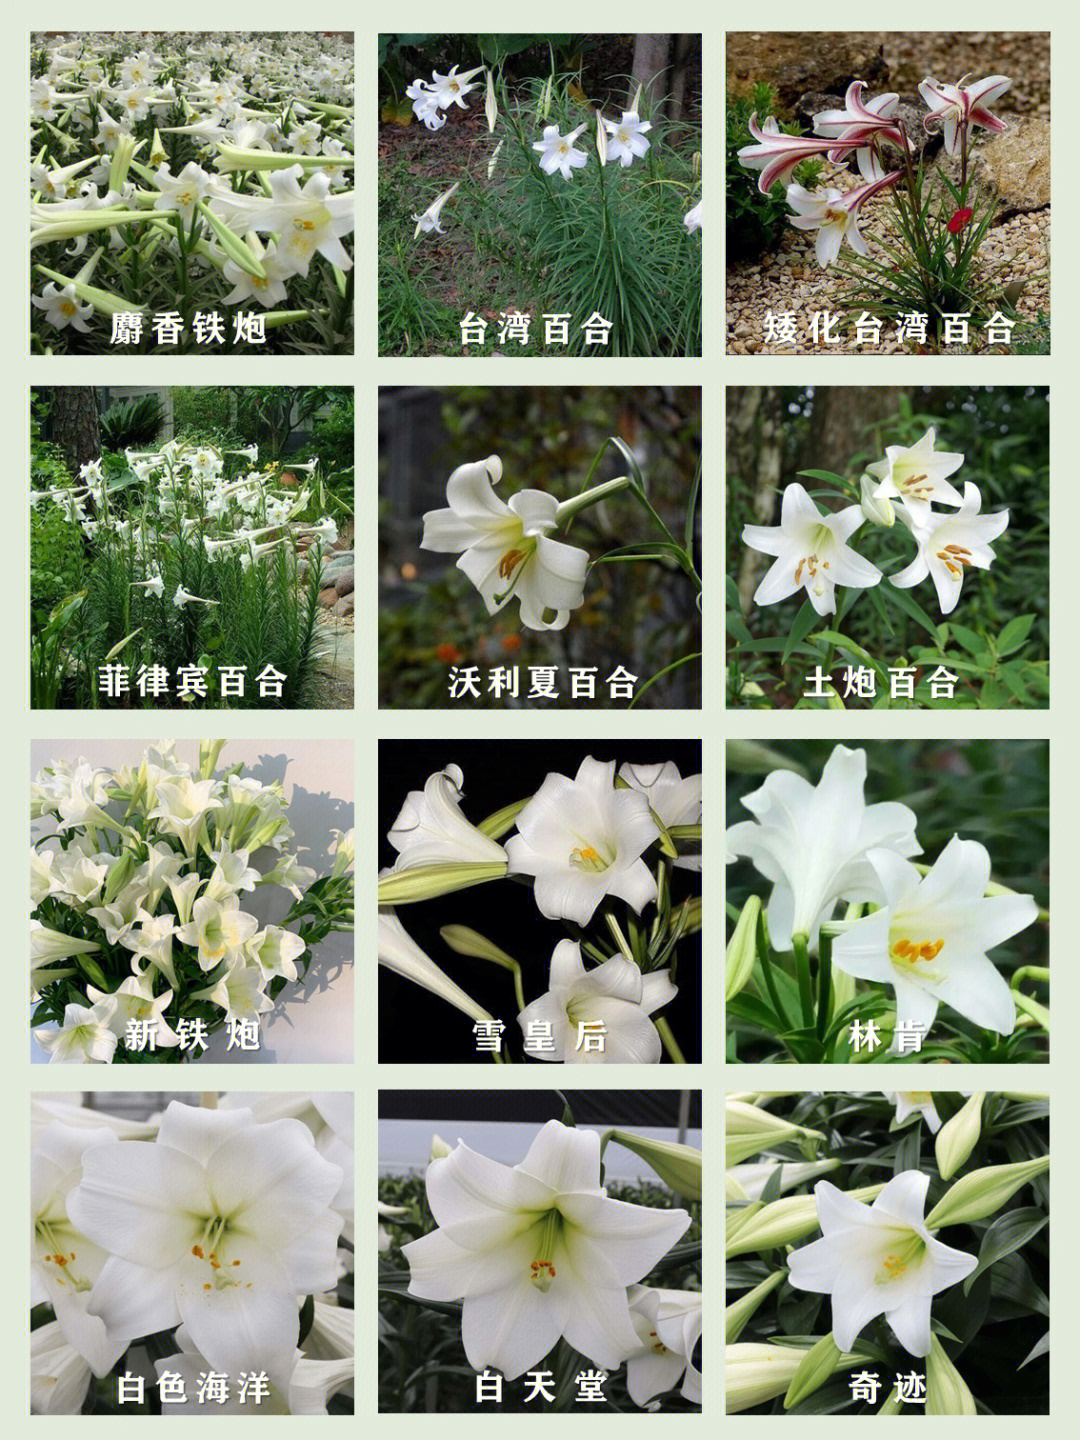 百合花花萼数量图片